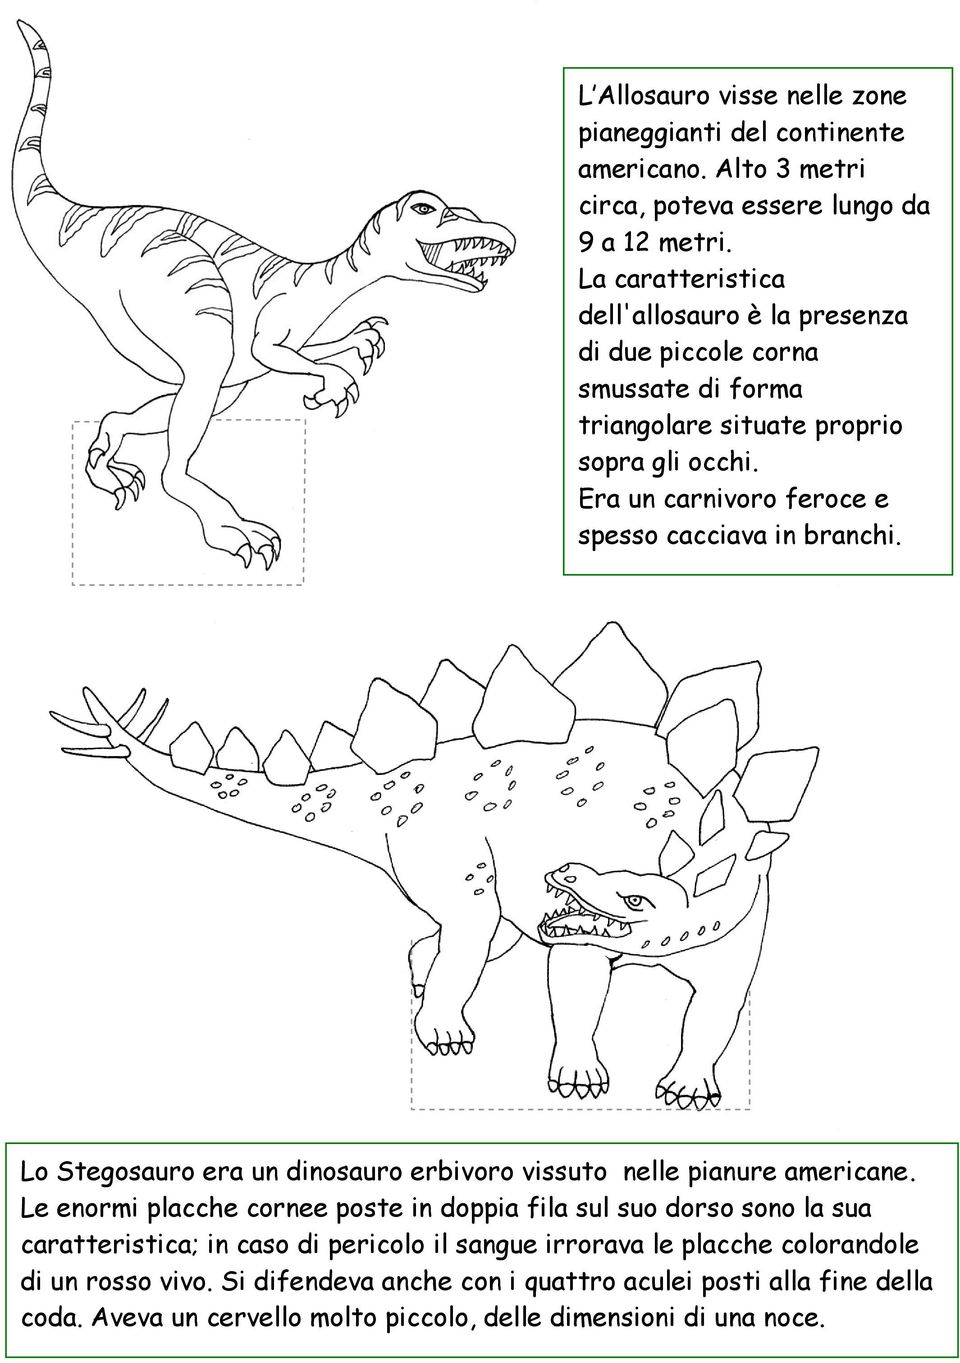 Era un carnivoro feroce e spesso cacciava in branchi. Lo Stegosauro era un dinosauro erbivoro vissuto nelle pianure americane.